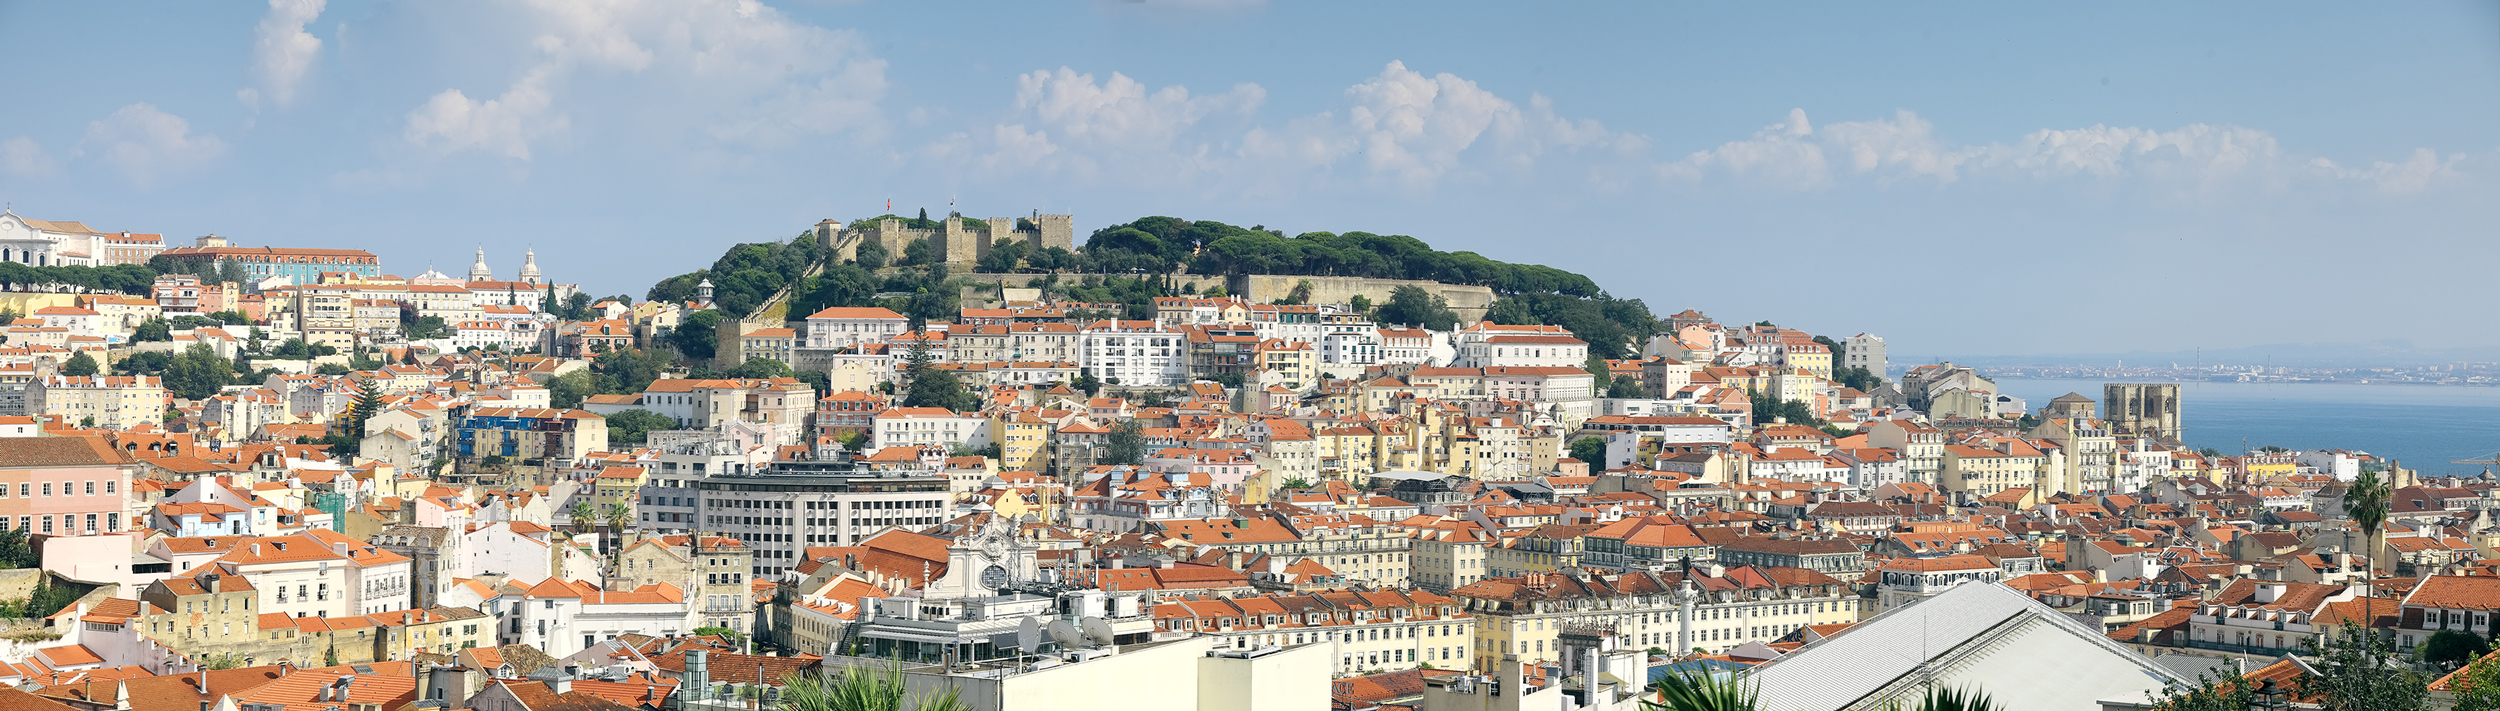 Lisboa - Blick auf das Castelo de São Jorge  | © Turismo de Lisboa |